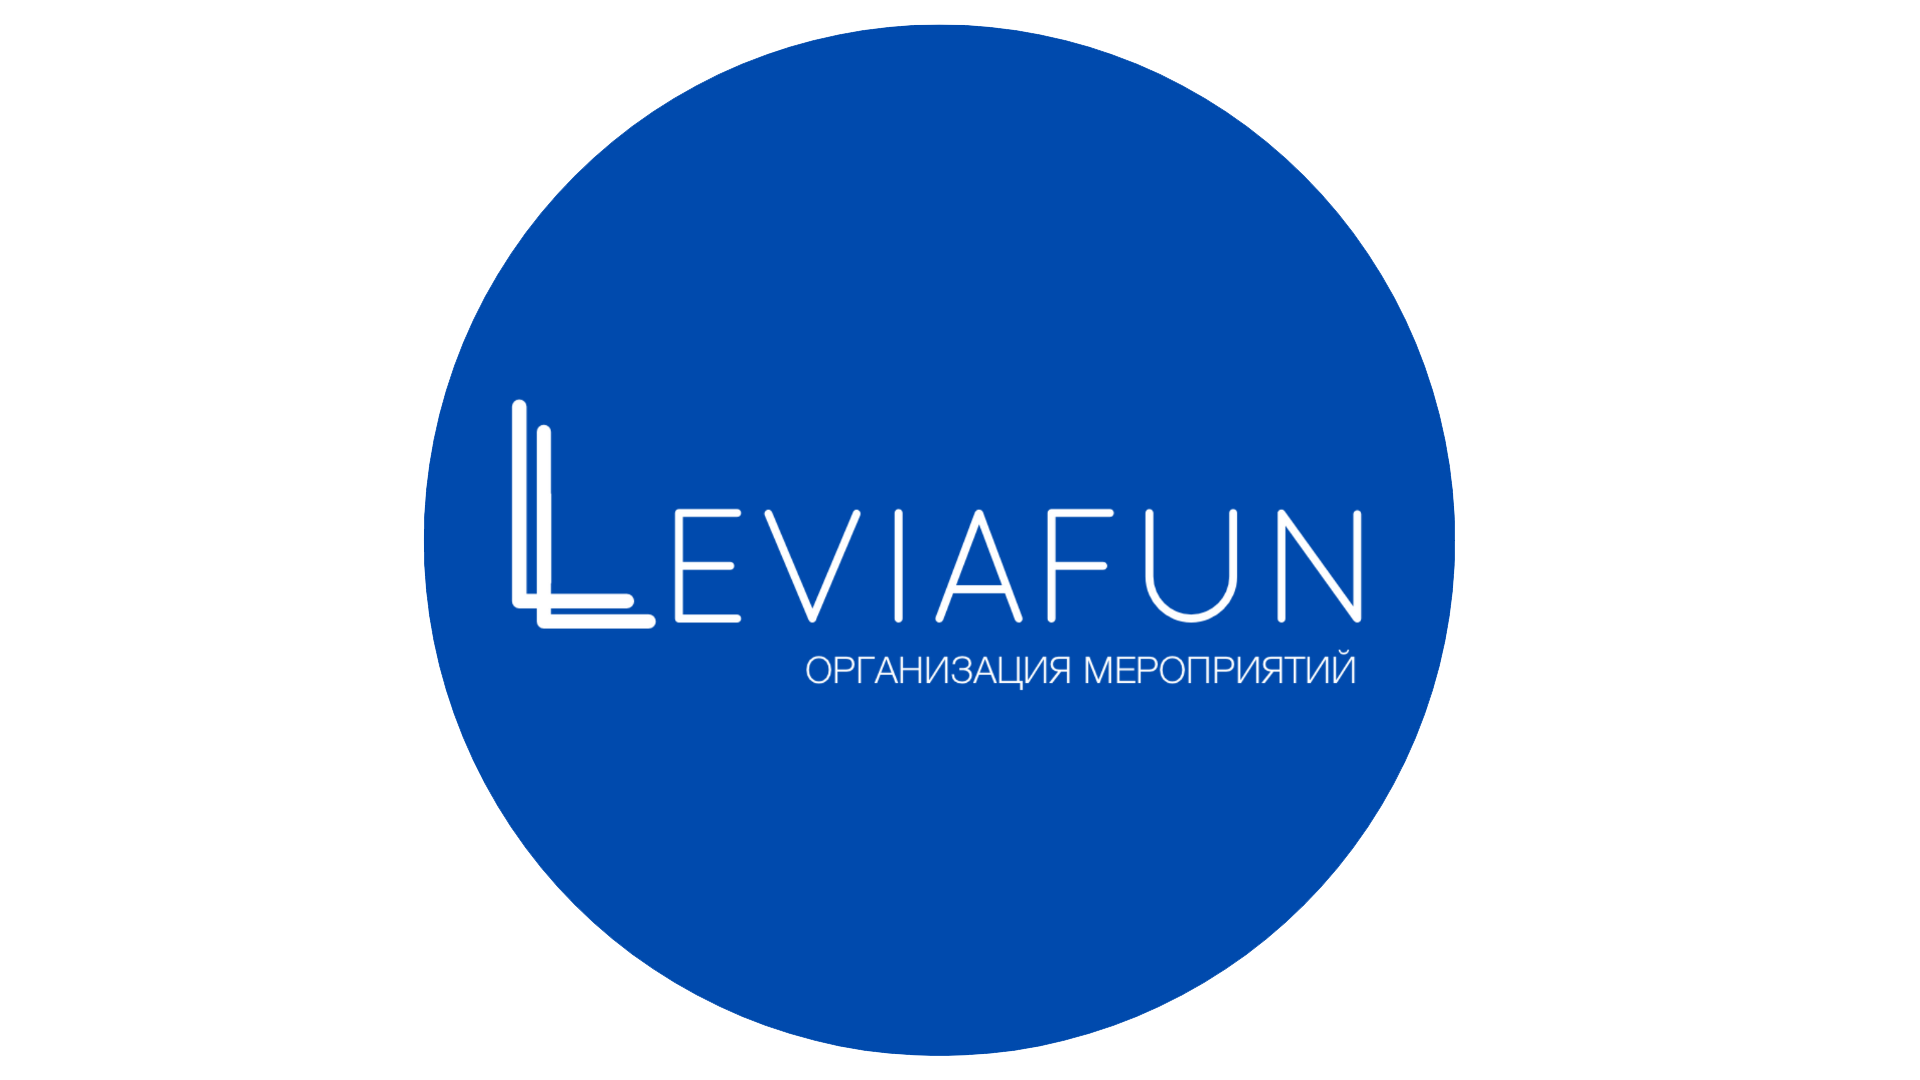 Творческое объединение LEVIAFUN